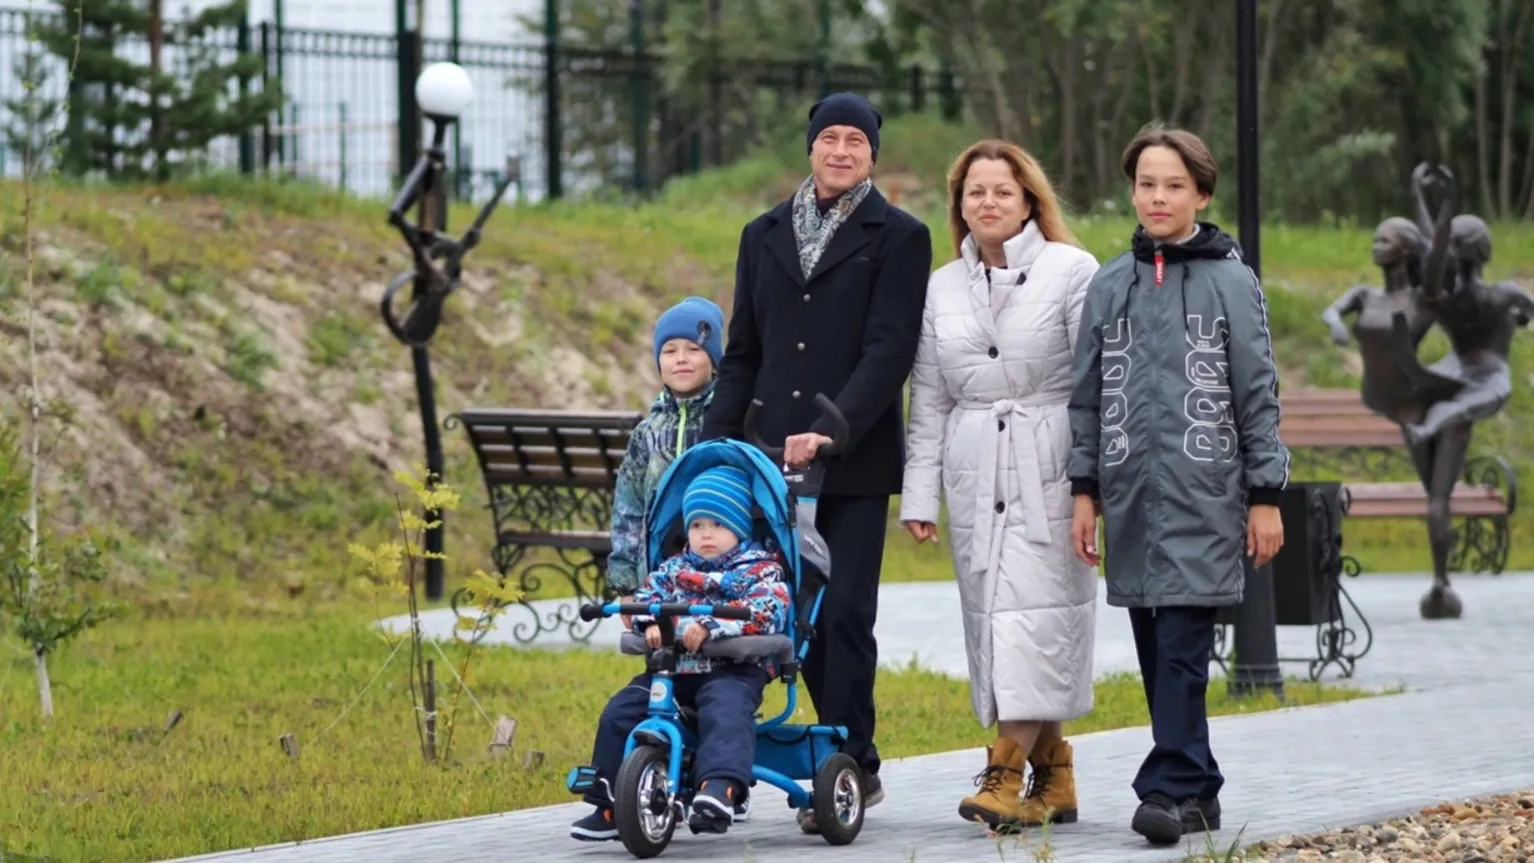 Детские пособия и другие меры поддержки семьям на Ямале также вырастут. Фото: пресс-служба губернатора ЯНАО